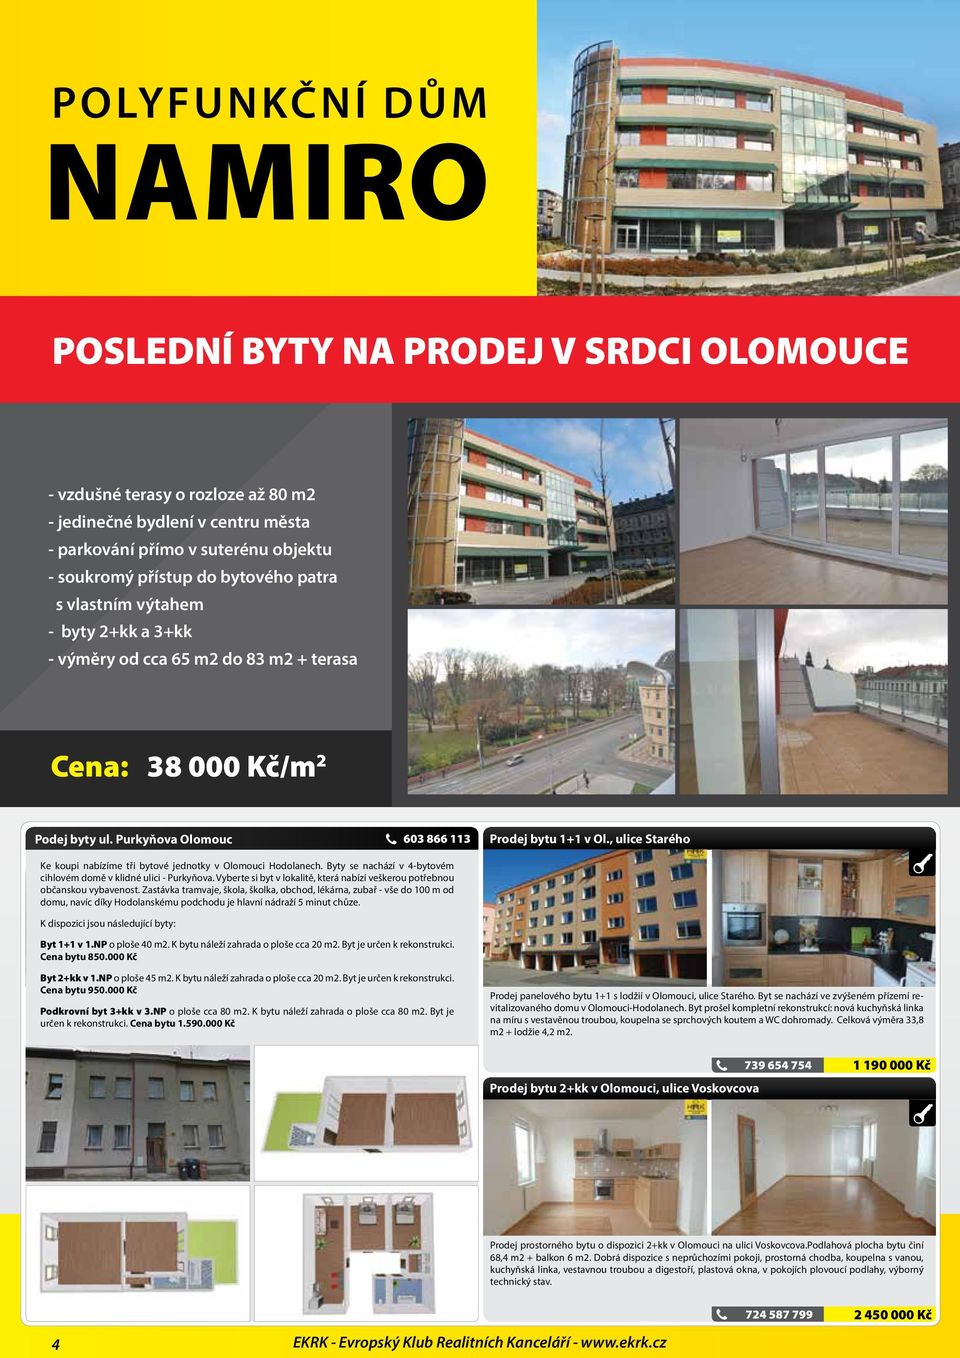 Purkyňova Olomouc Ke koupi nabízíme tři bytové jednotky v Olomouci Hodolanech. Byty se nachází v 4-bytovém cihlovém domě v klidné ulici - Purkyňova.